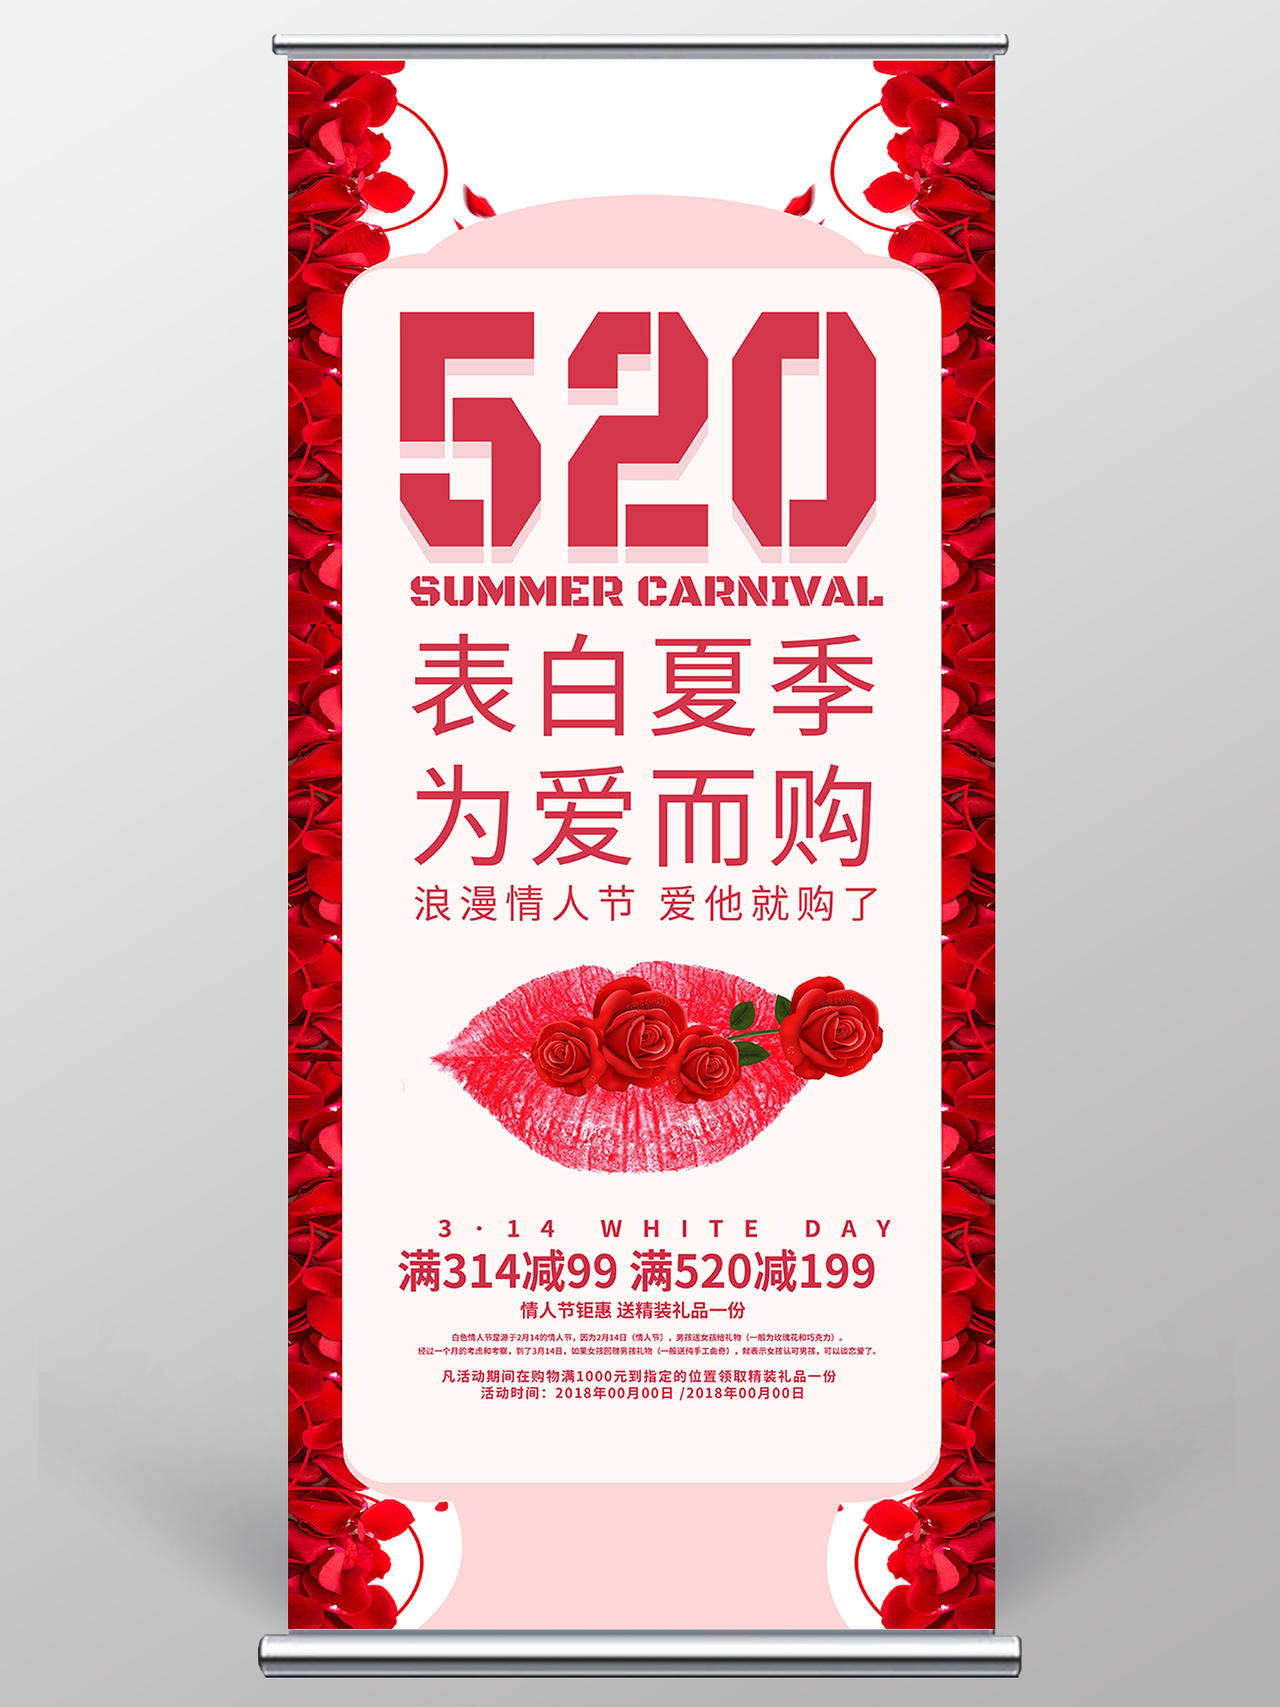 玫瑰红色浪漫520表白夏季展架520展架